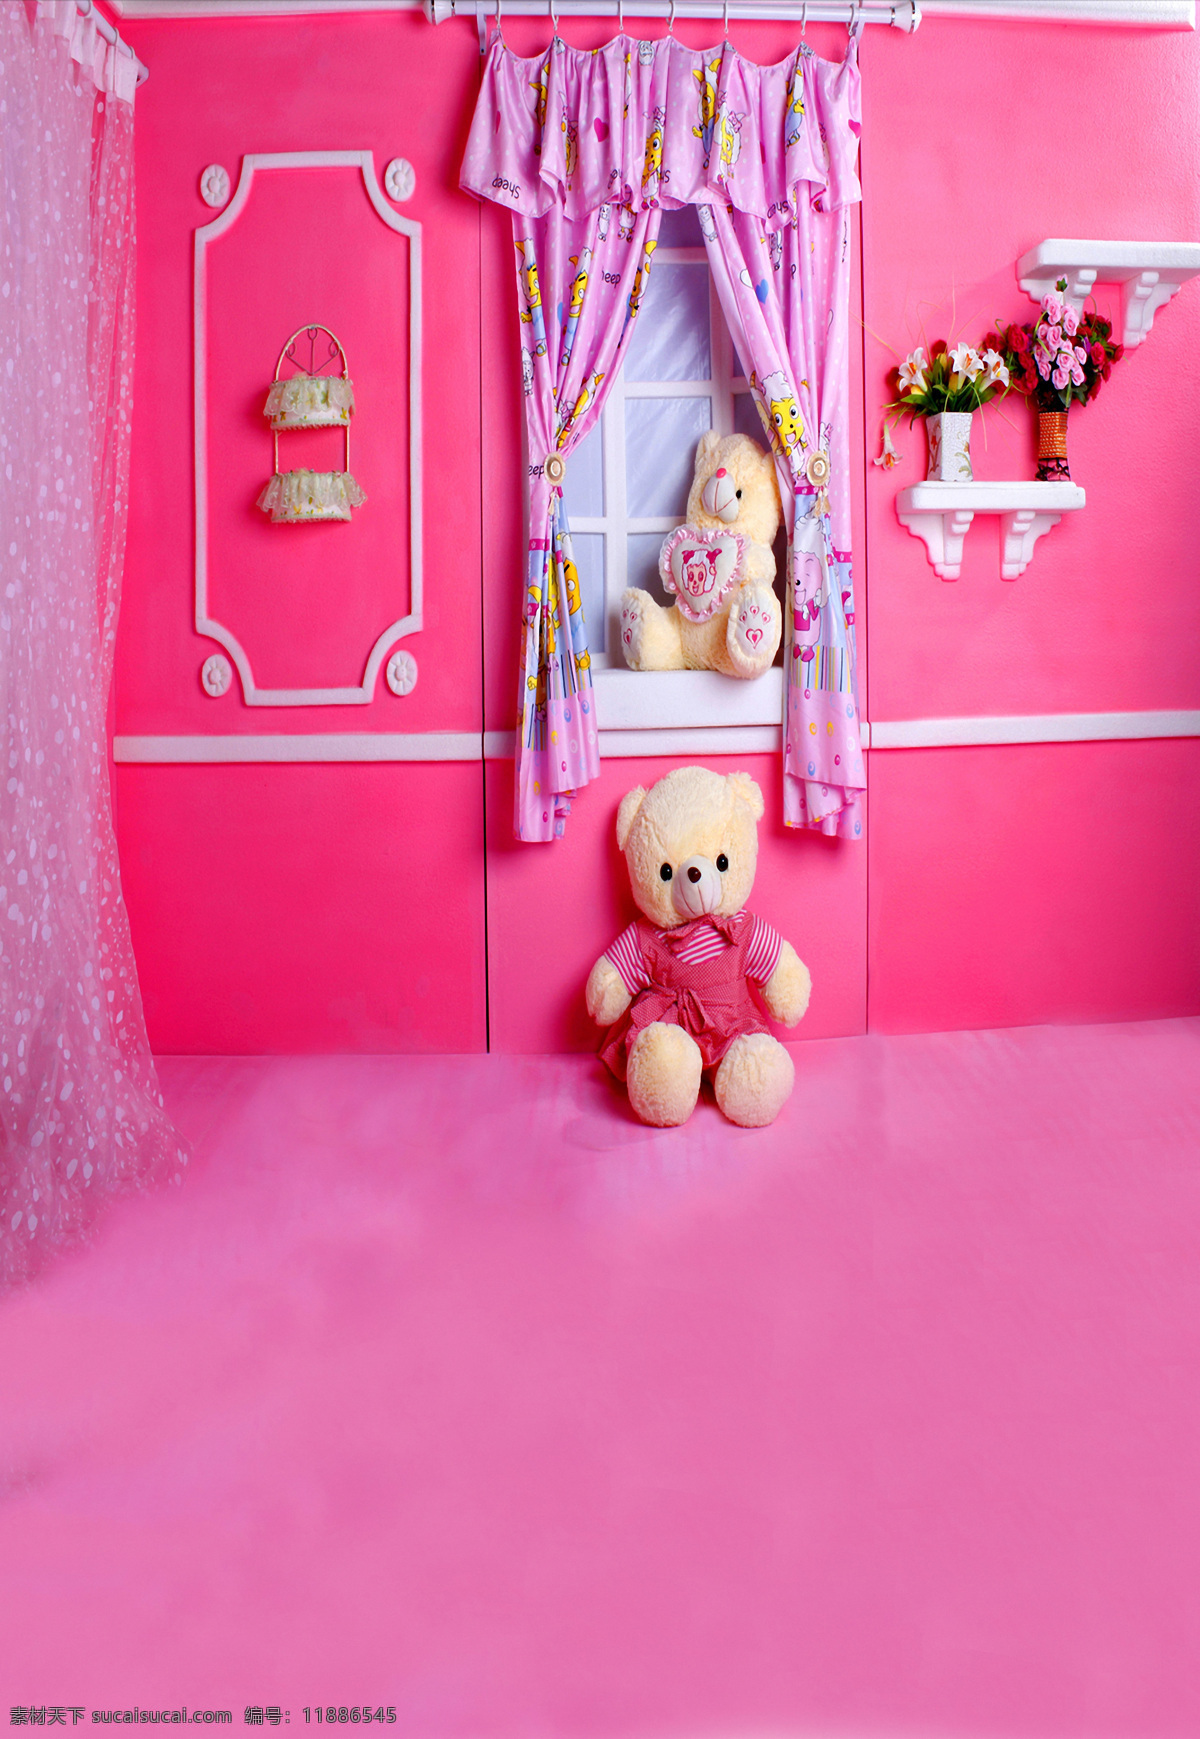 卡通 粉色 家园 儿童 背景 大图 清晰背景 粉色家园 小熊 粉红色 温馨 影楼专用 卡通儿童背景